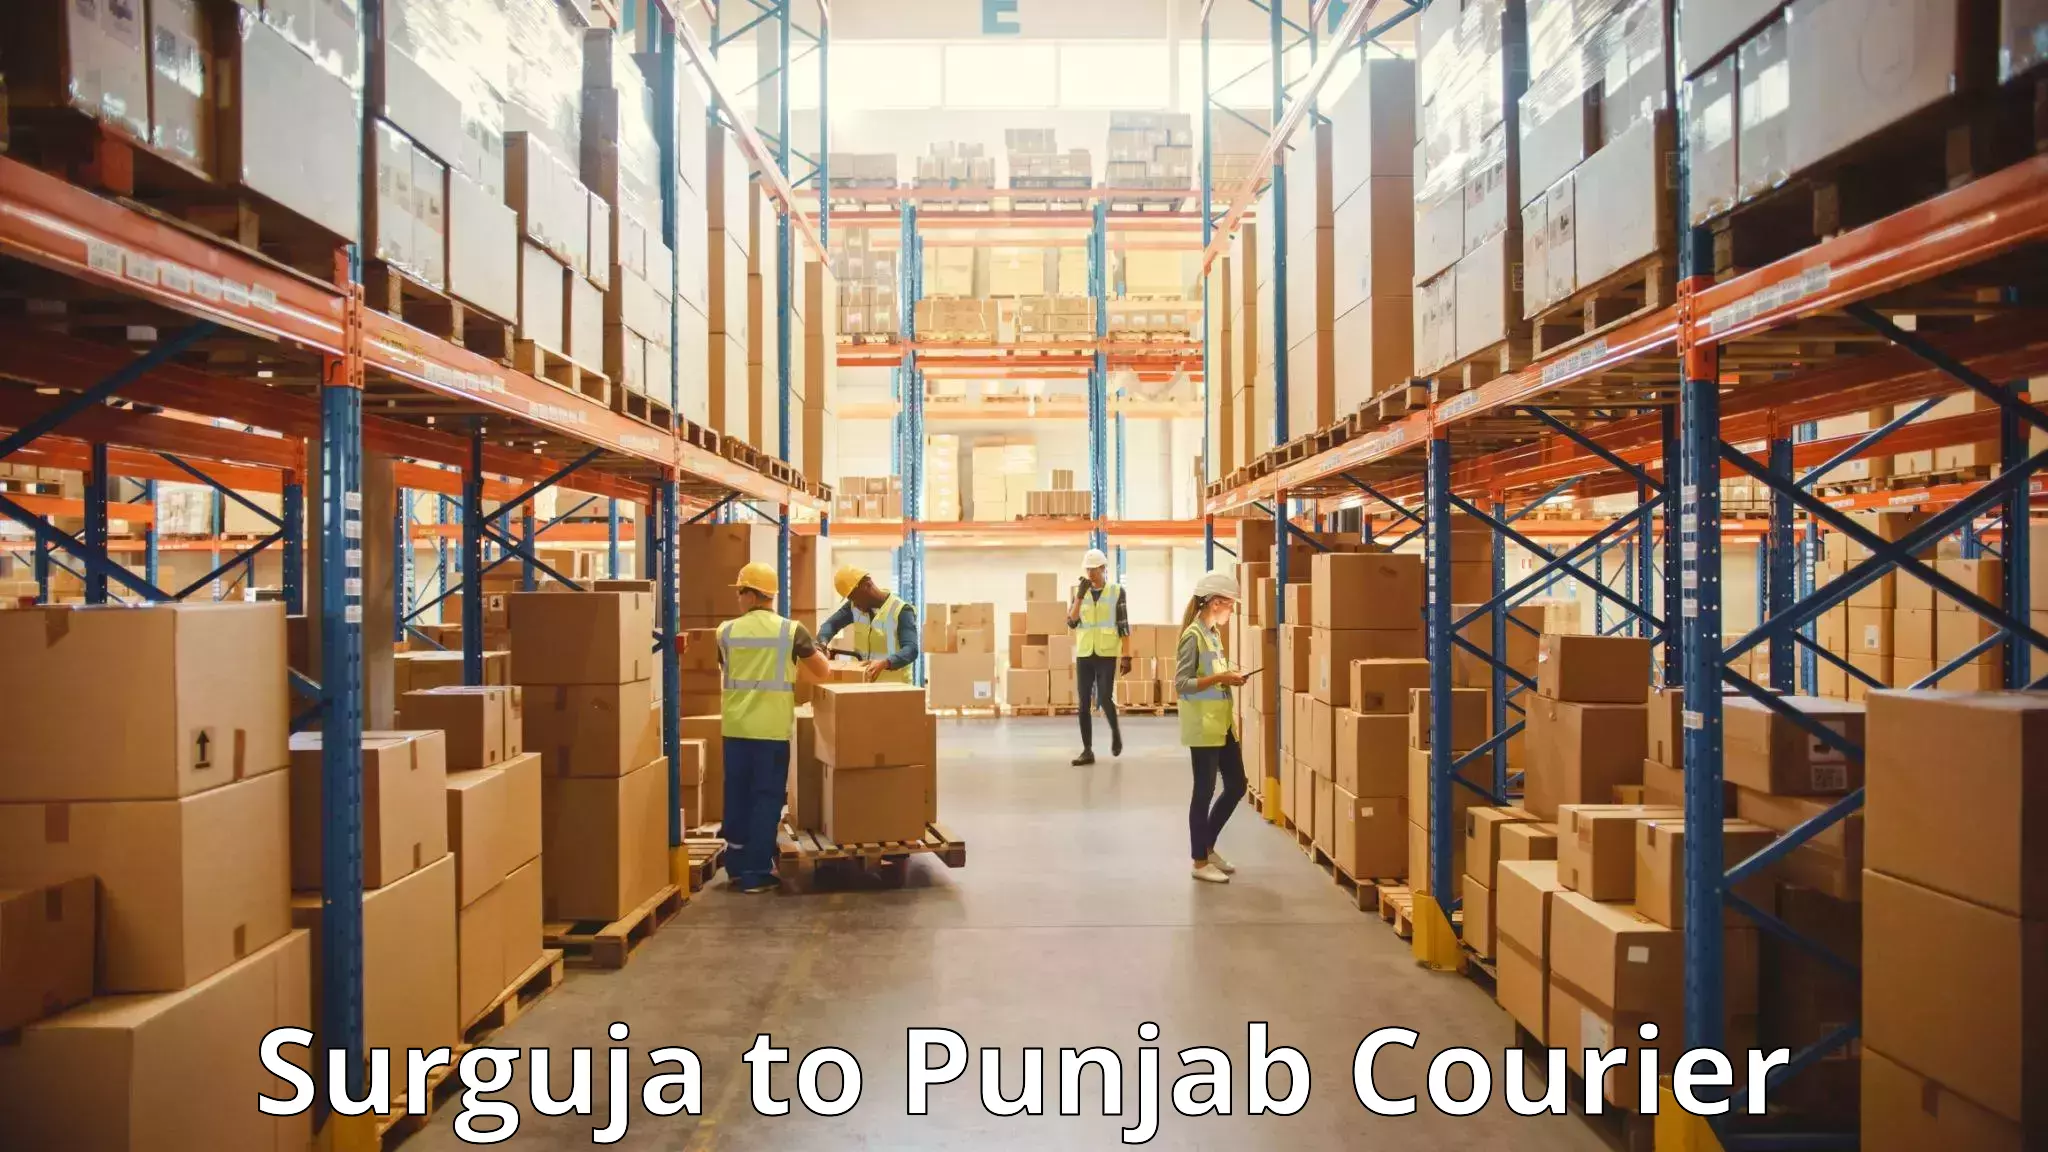 Regional luggage transport Surguja to Punjab